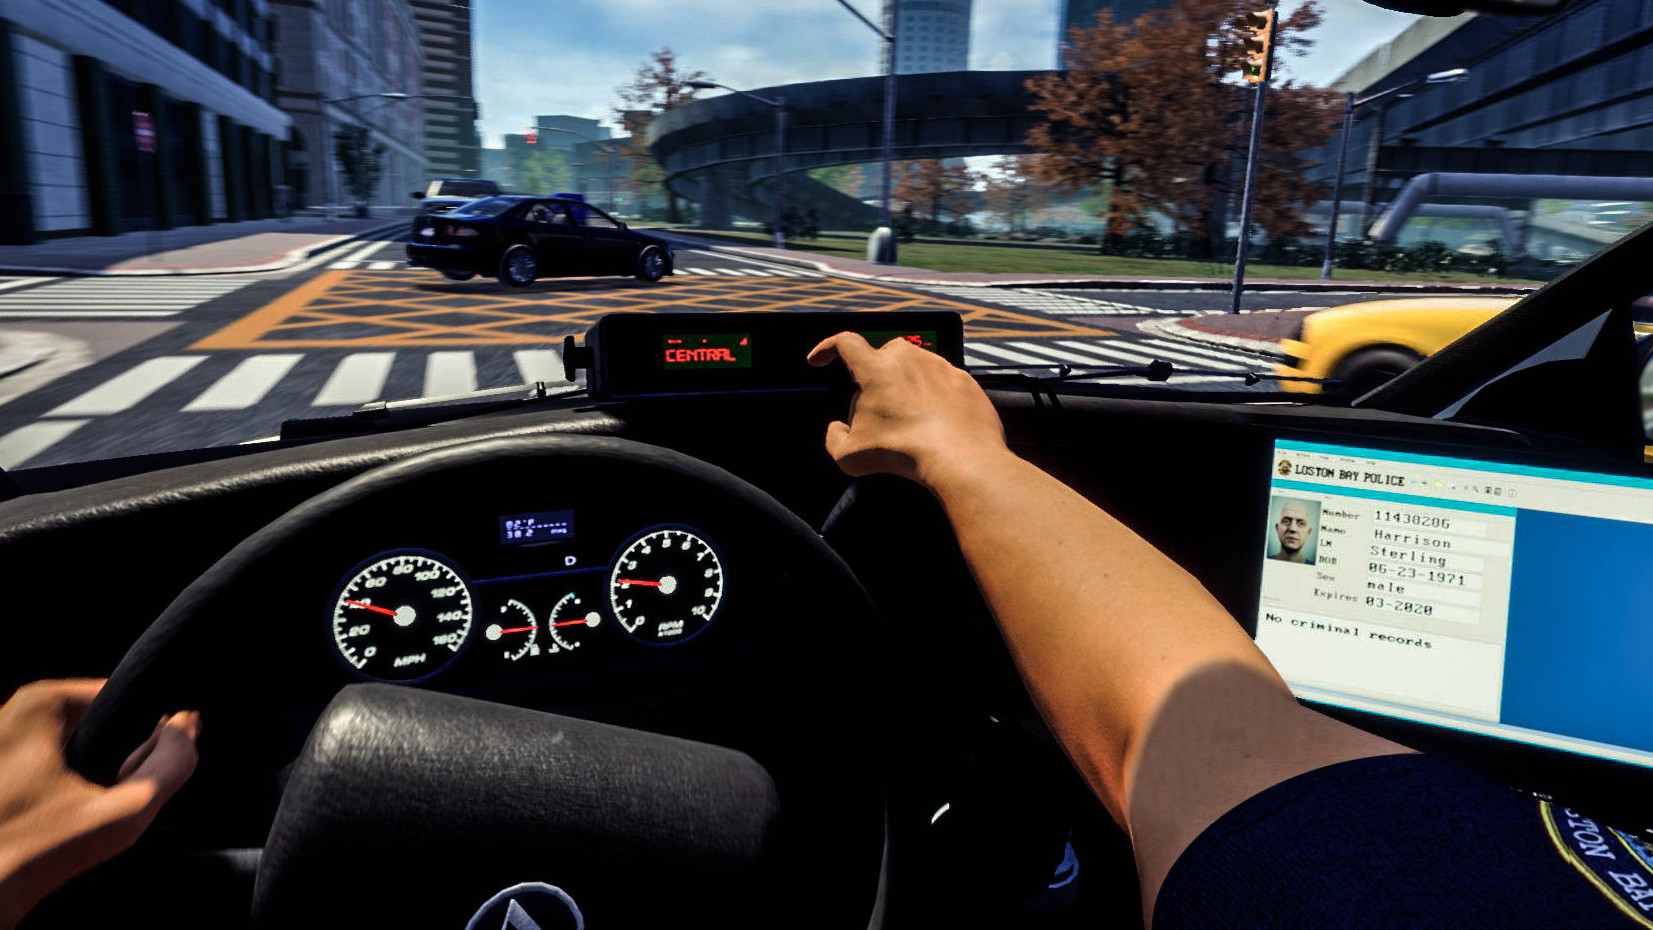 Police Car Simulator for mac download